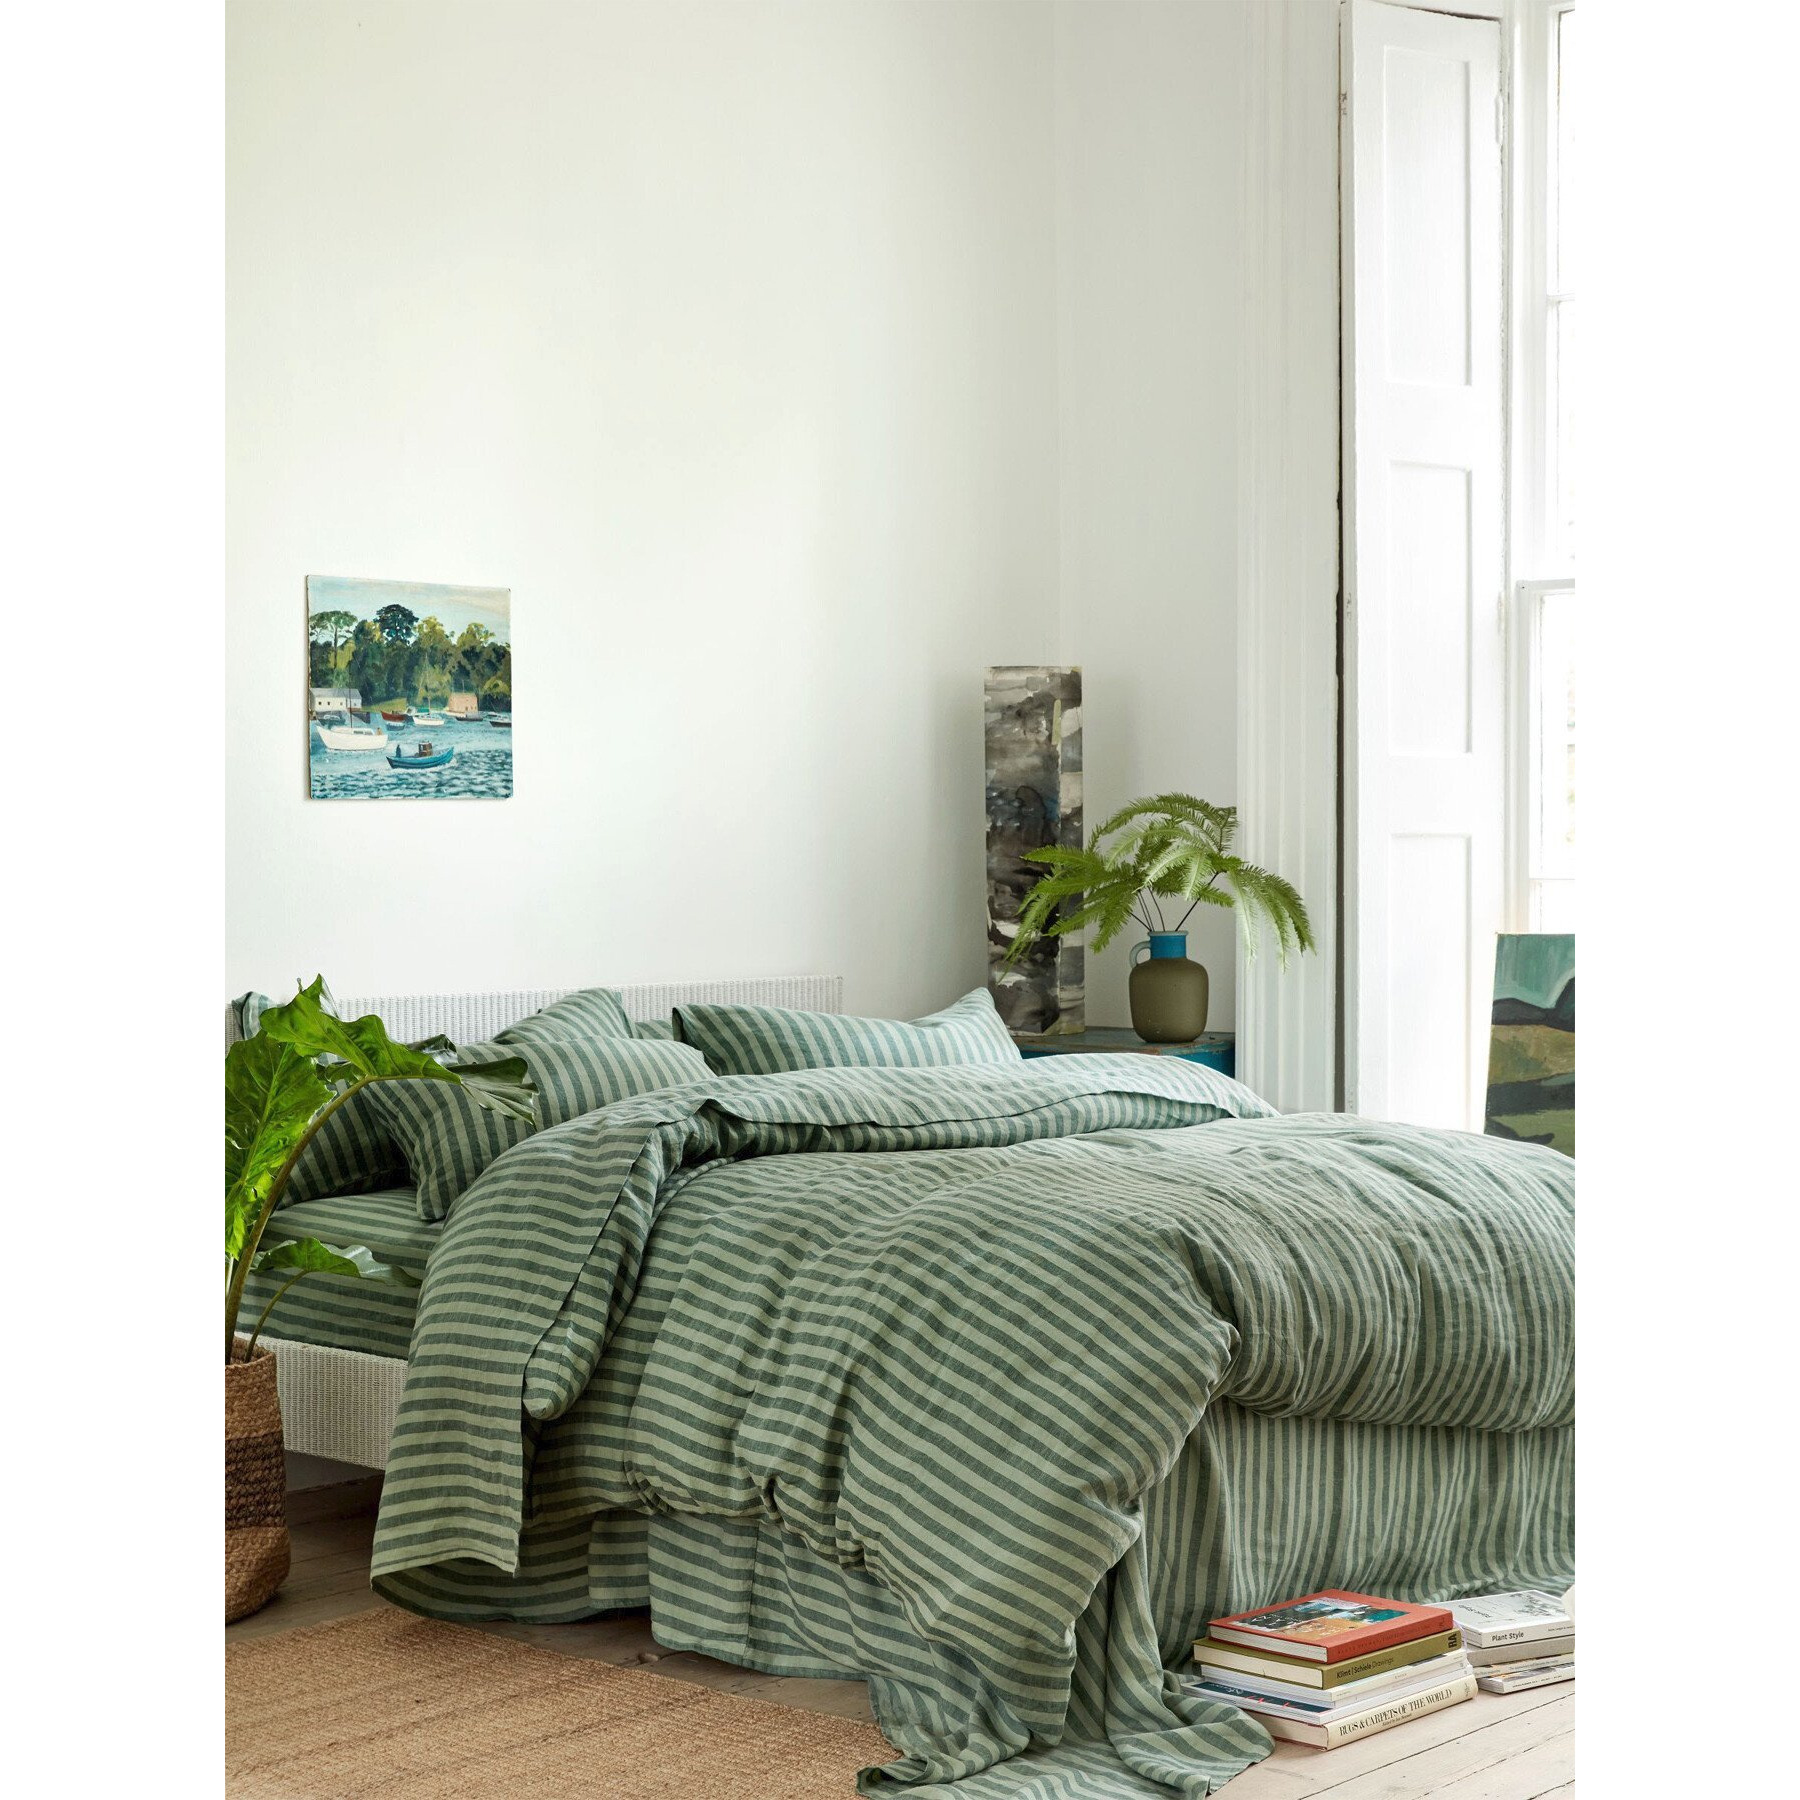 Piglet in Bed Pembroke Stripe Linen Flat Sheet - Size King Green - image 1